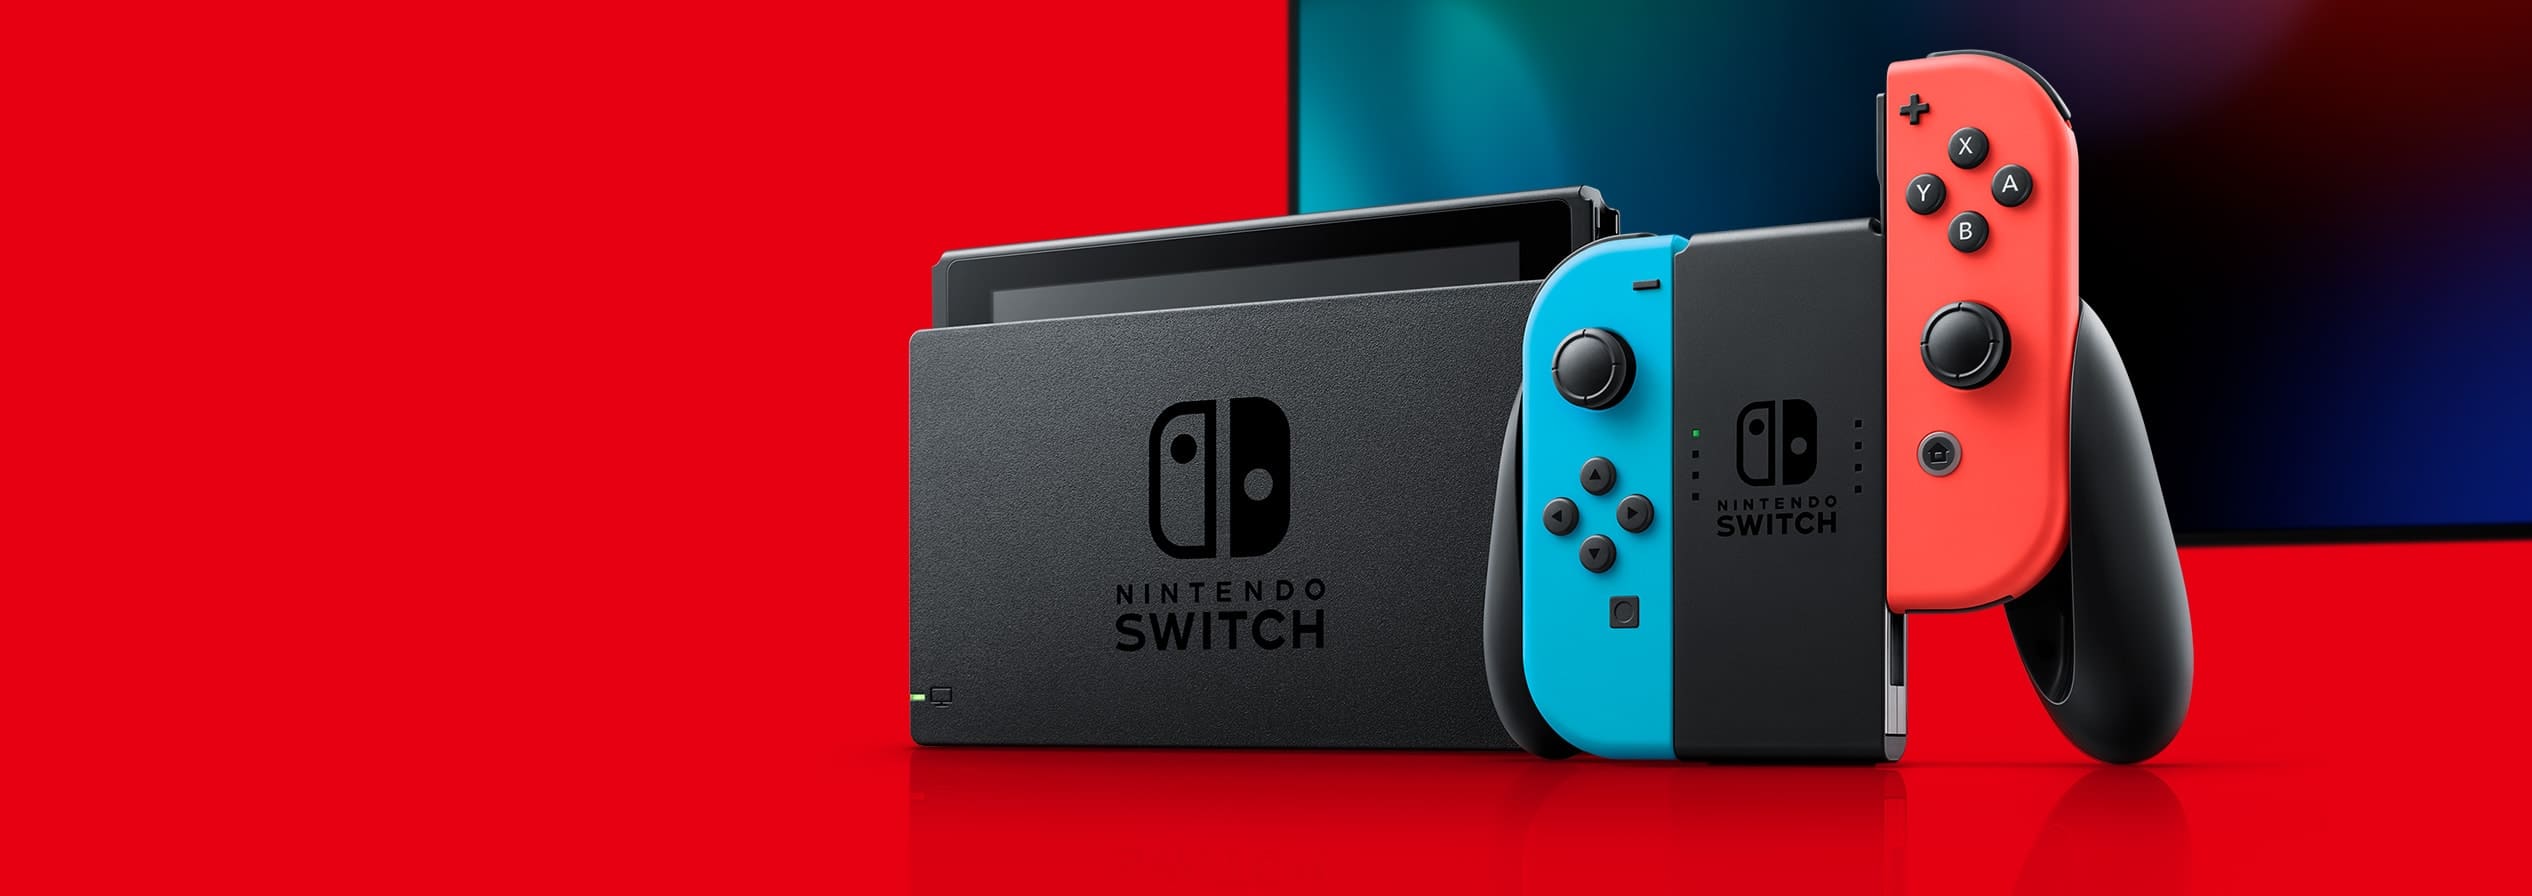 منصة Nintendo Switch حققت نجاح ضخم خلال شهر يوليو